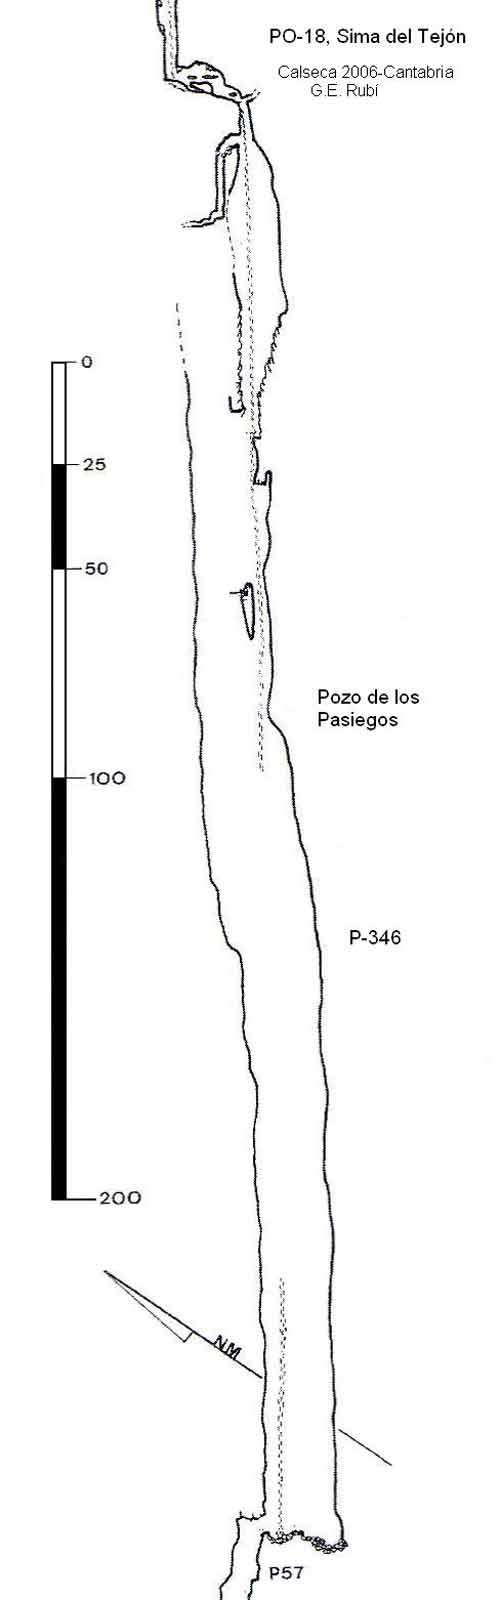 Pozo de los Pasiegos -346m / Cantabria